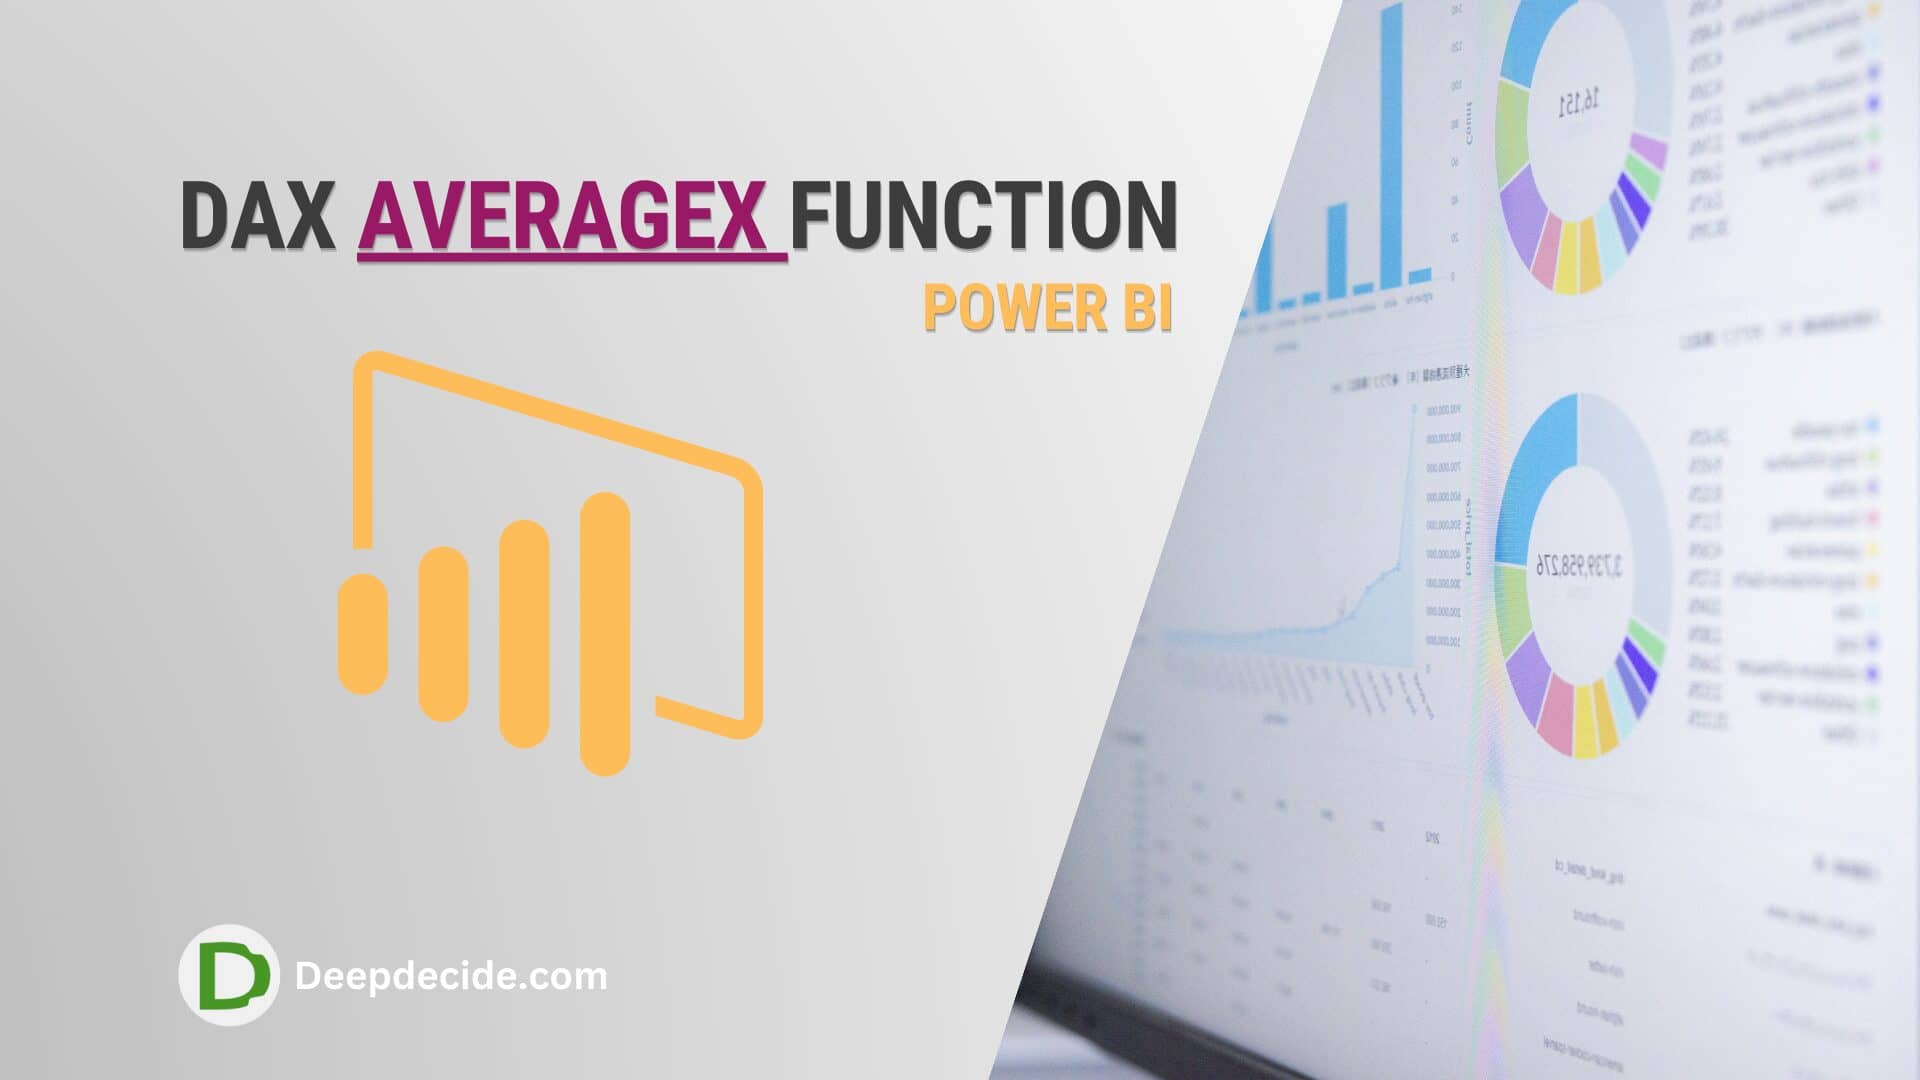 DAX AVERAGEX Function in Power BI